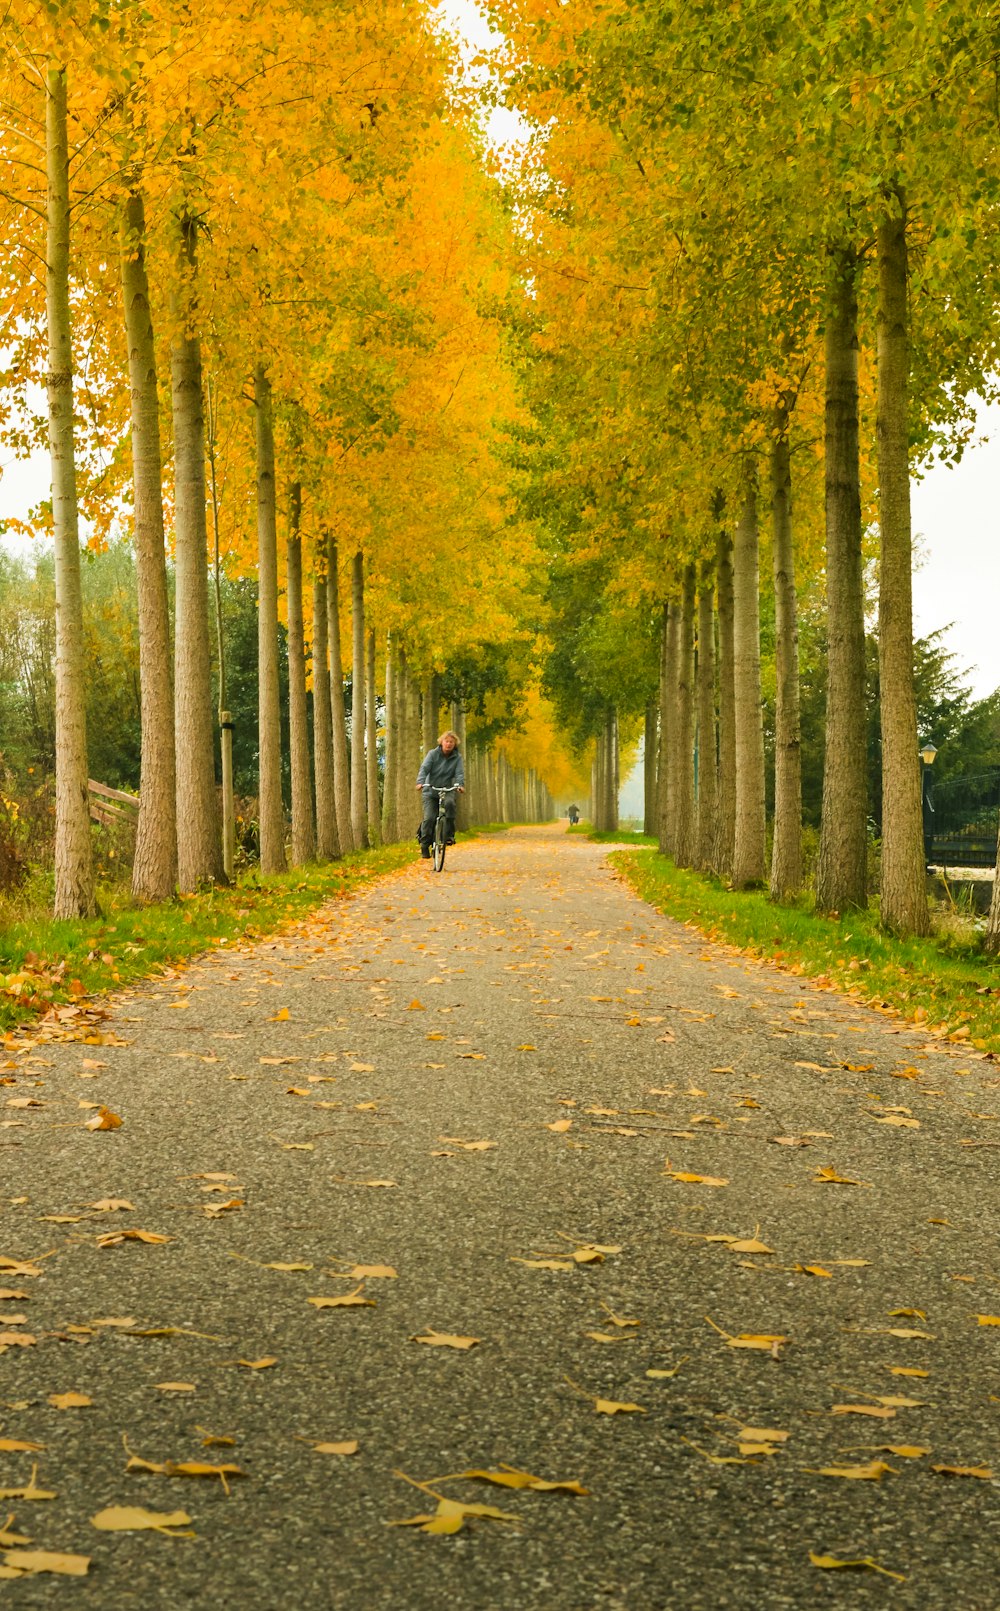 Persona in giacca nera che cammina sul sentiero grigio tra gli alberi verdi durante il giorno